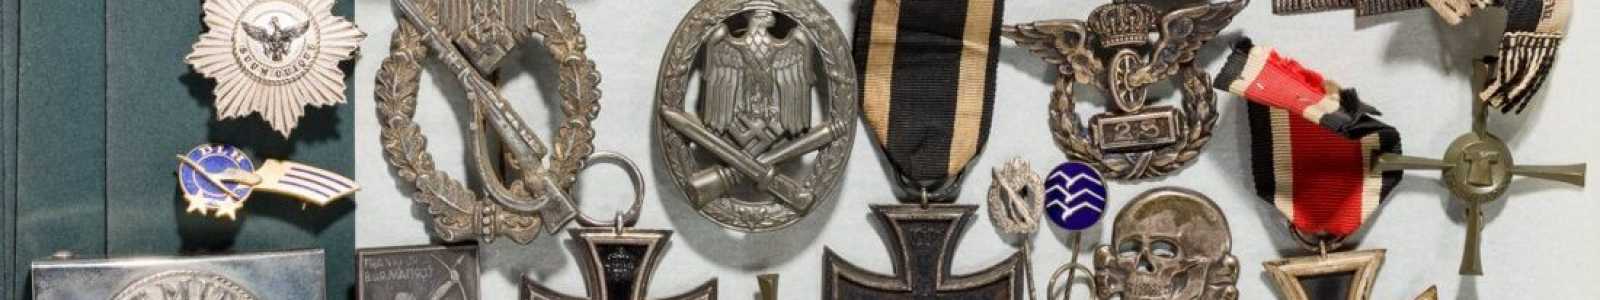 O82r - День 1: немецкая современная история - ордена и милитария 1919 года